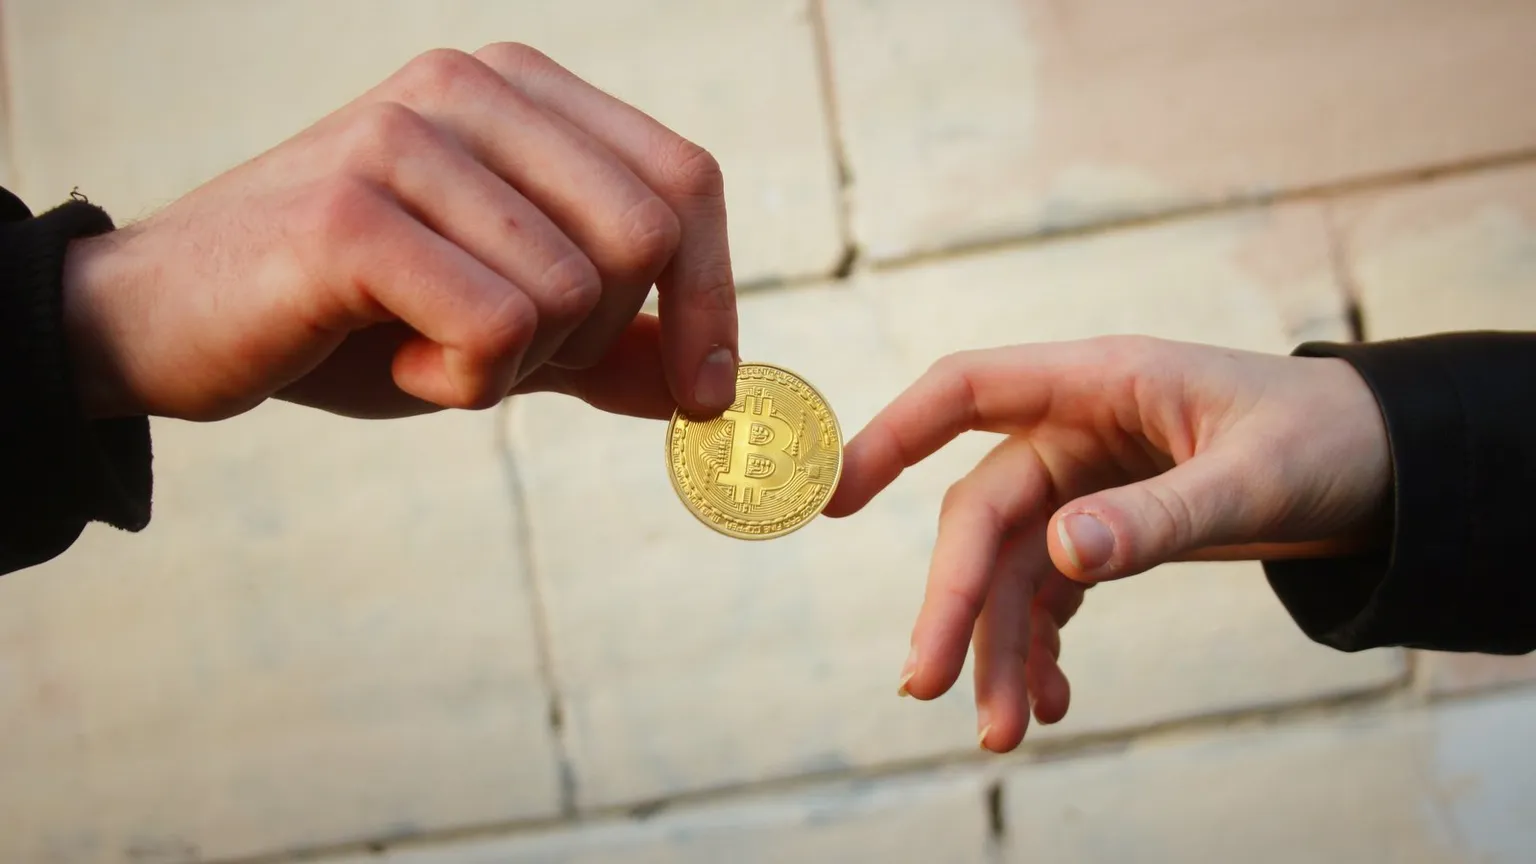 El coste medio de una sola transacción de Bitcoin se ha desplomado desde los altos niveles que siguieron al halving de Bitcoin. Imagen: Shutterstock